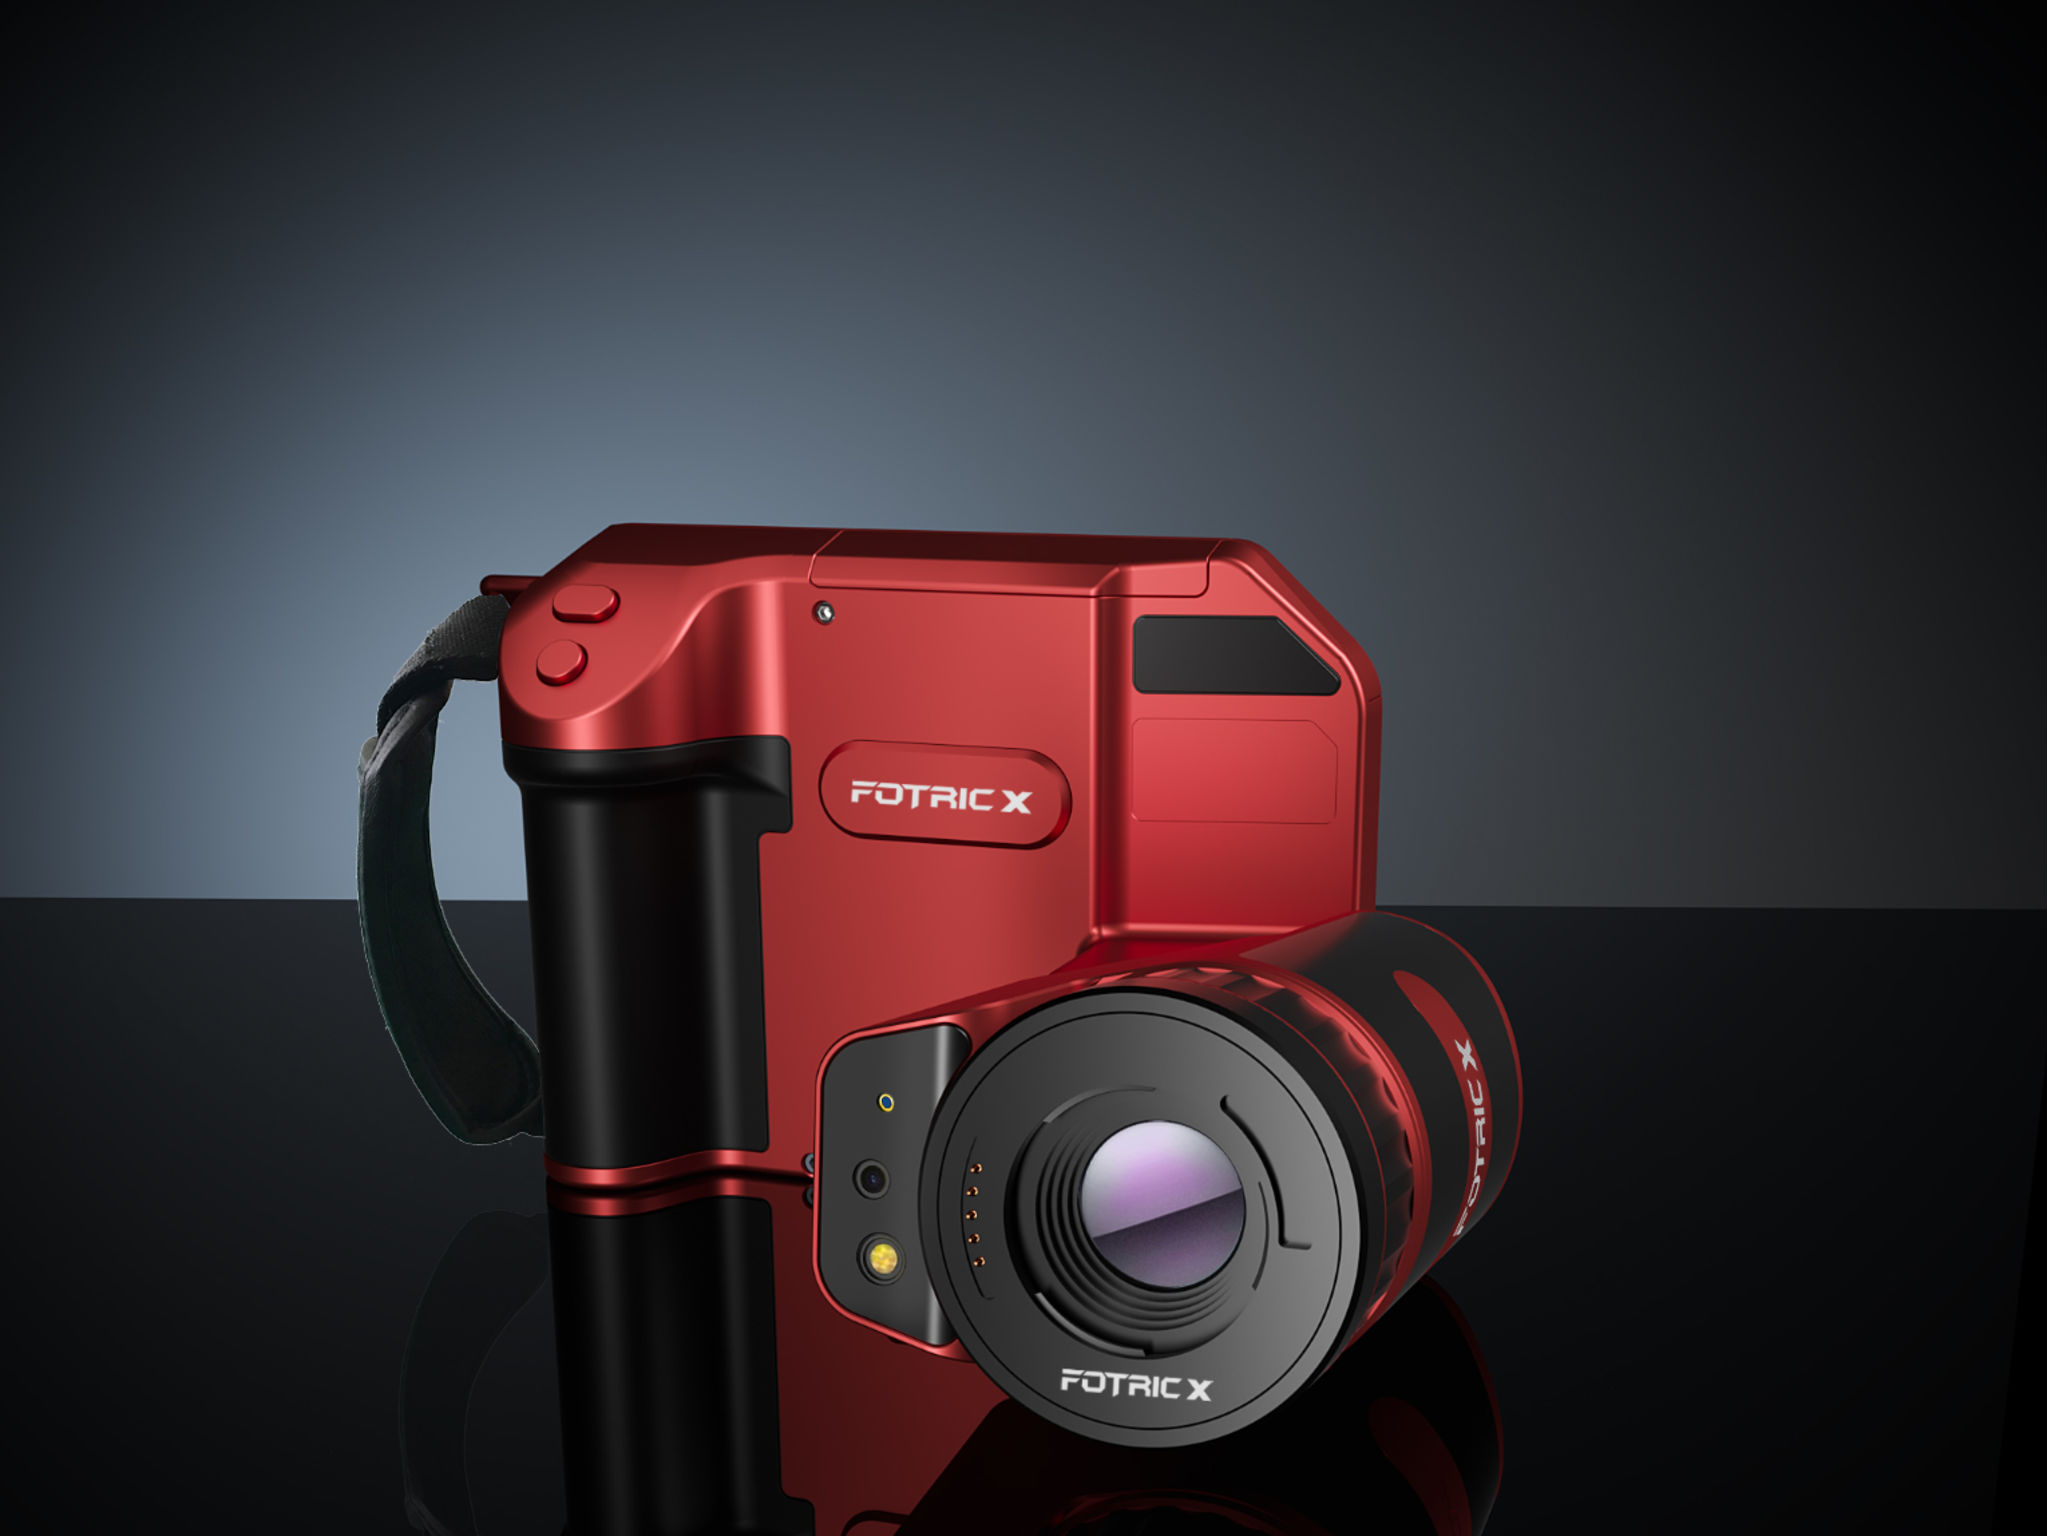 FOTRIC X Thermal Camera